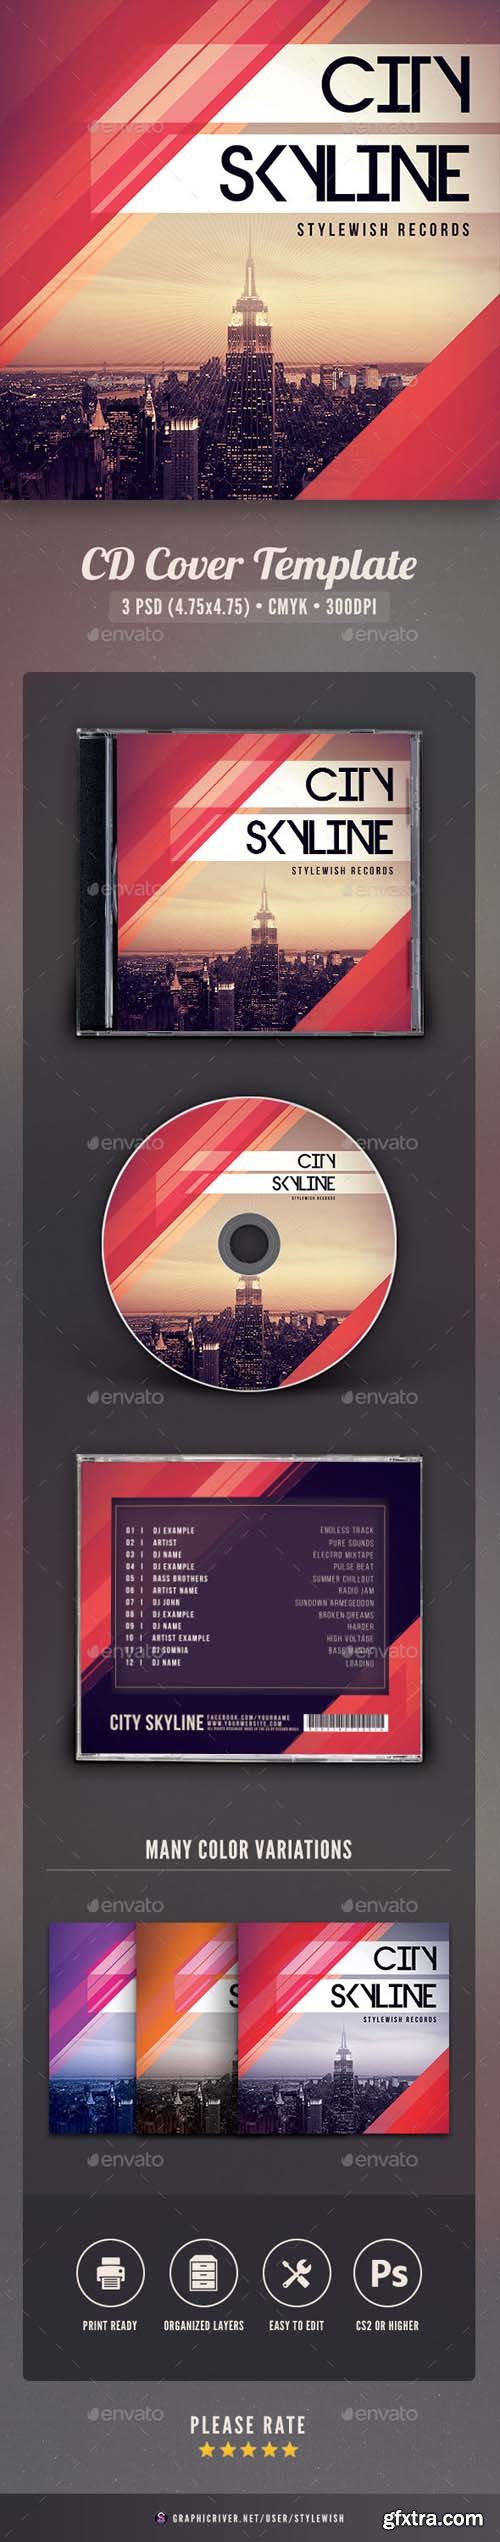 GR - City Skyline CD Cover Artwork 17569265